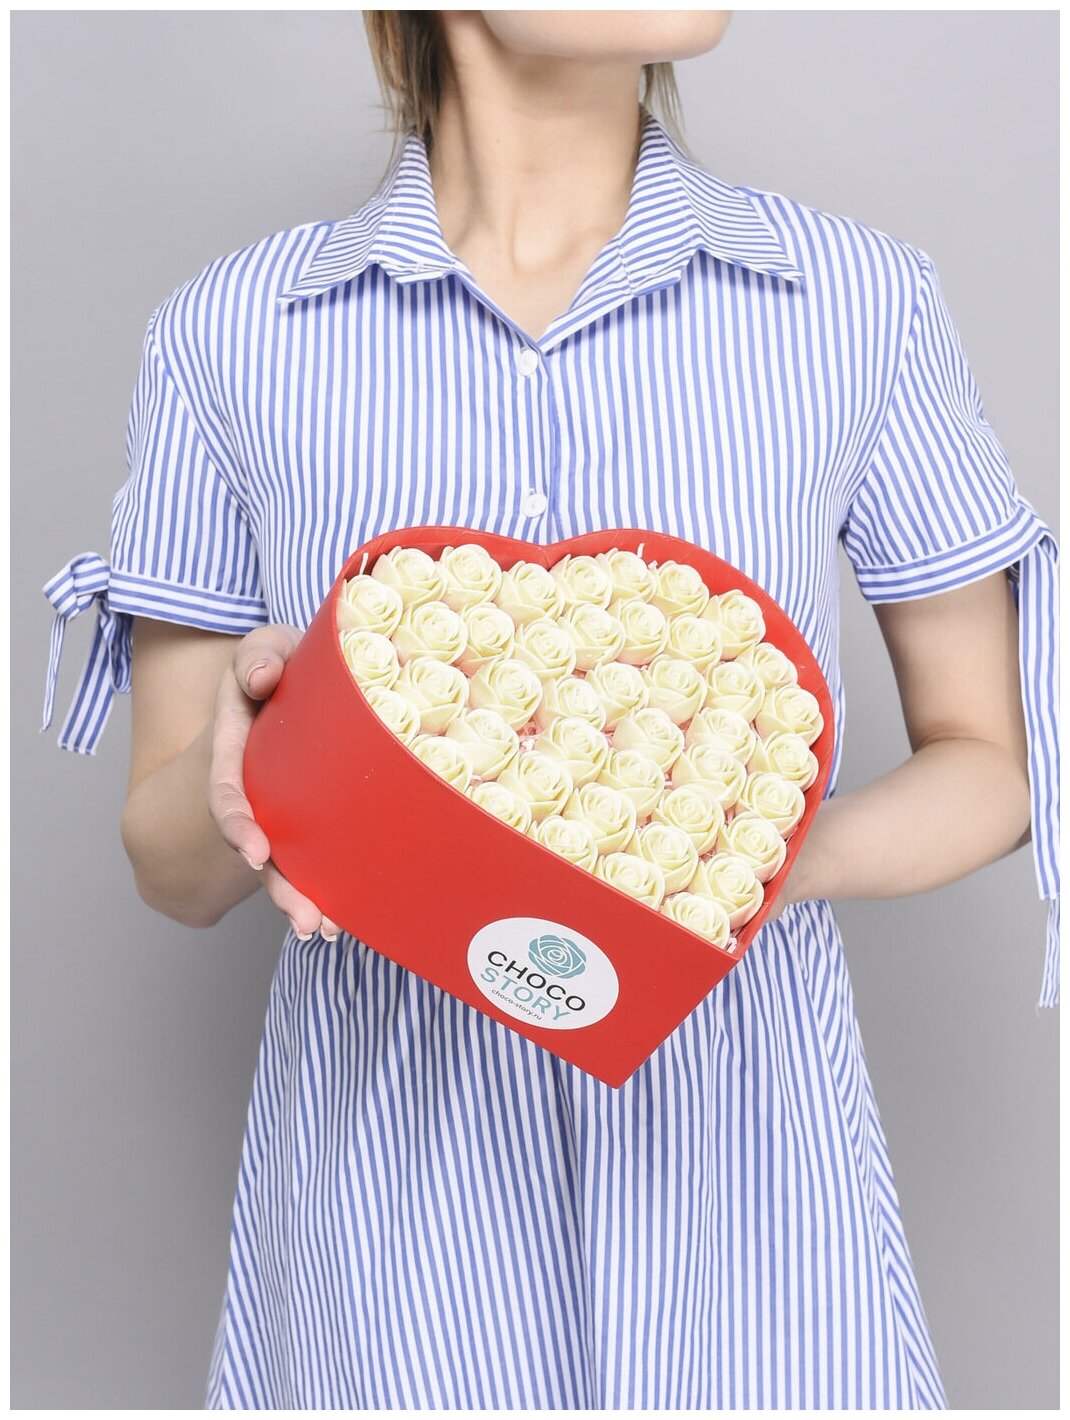 33 Шоколадные съедобные сладкие розы в форме сердца CHOCO STORY в Красной шляпной коробке с крышкой, Цвет: Белый Бельгийский шоколад, 396 гр. ZS33-K-B - фотография № 5